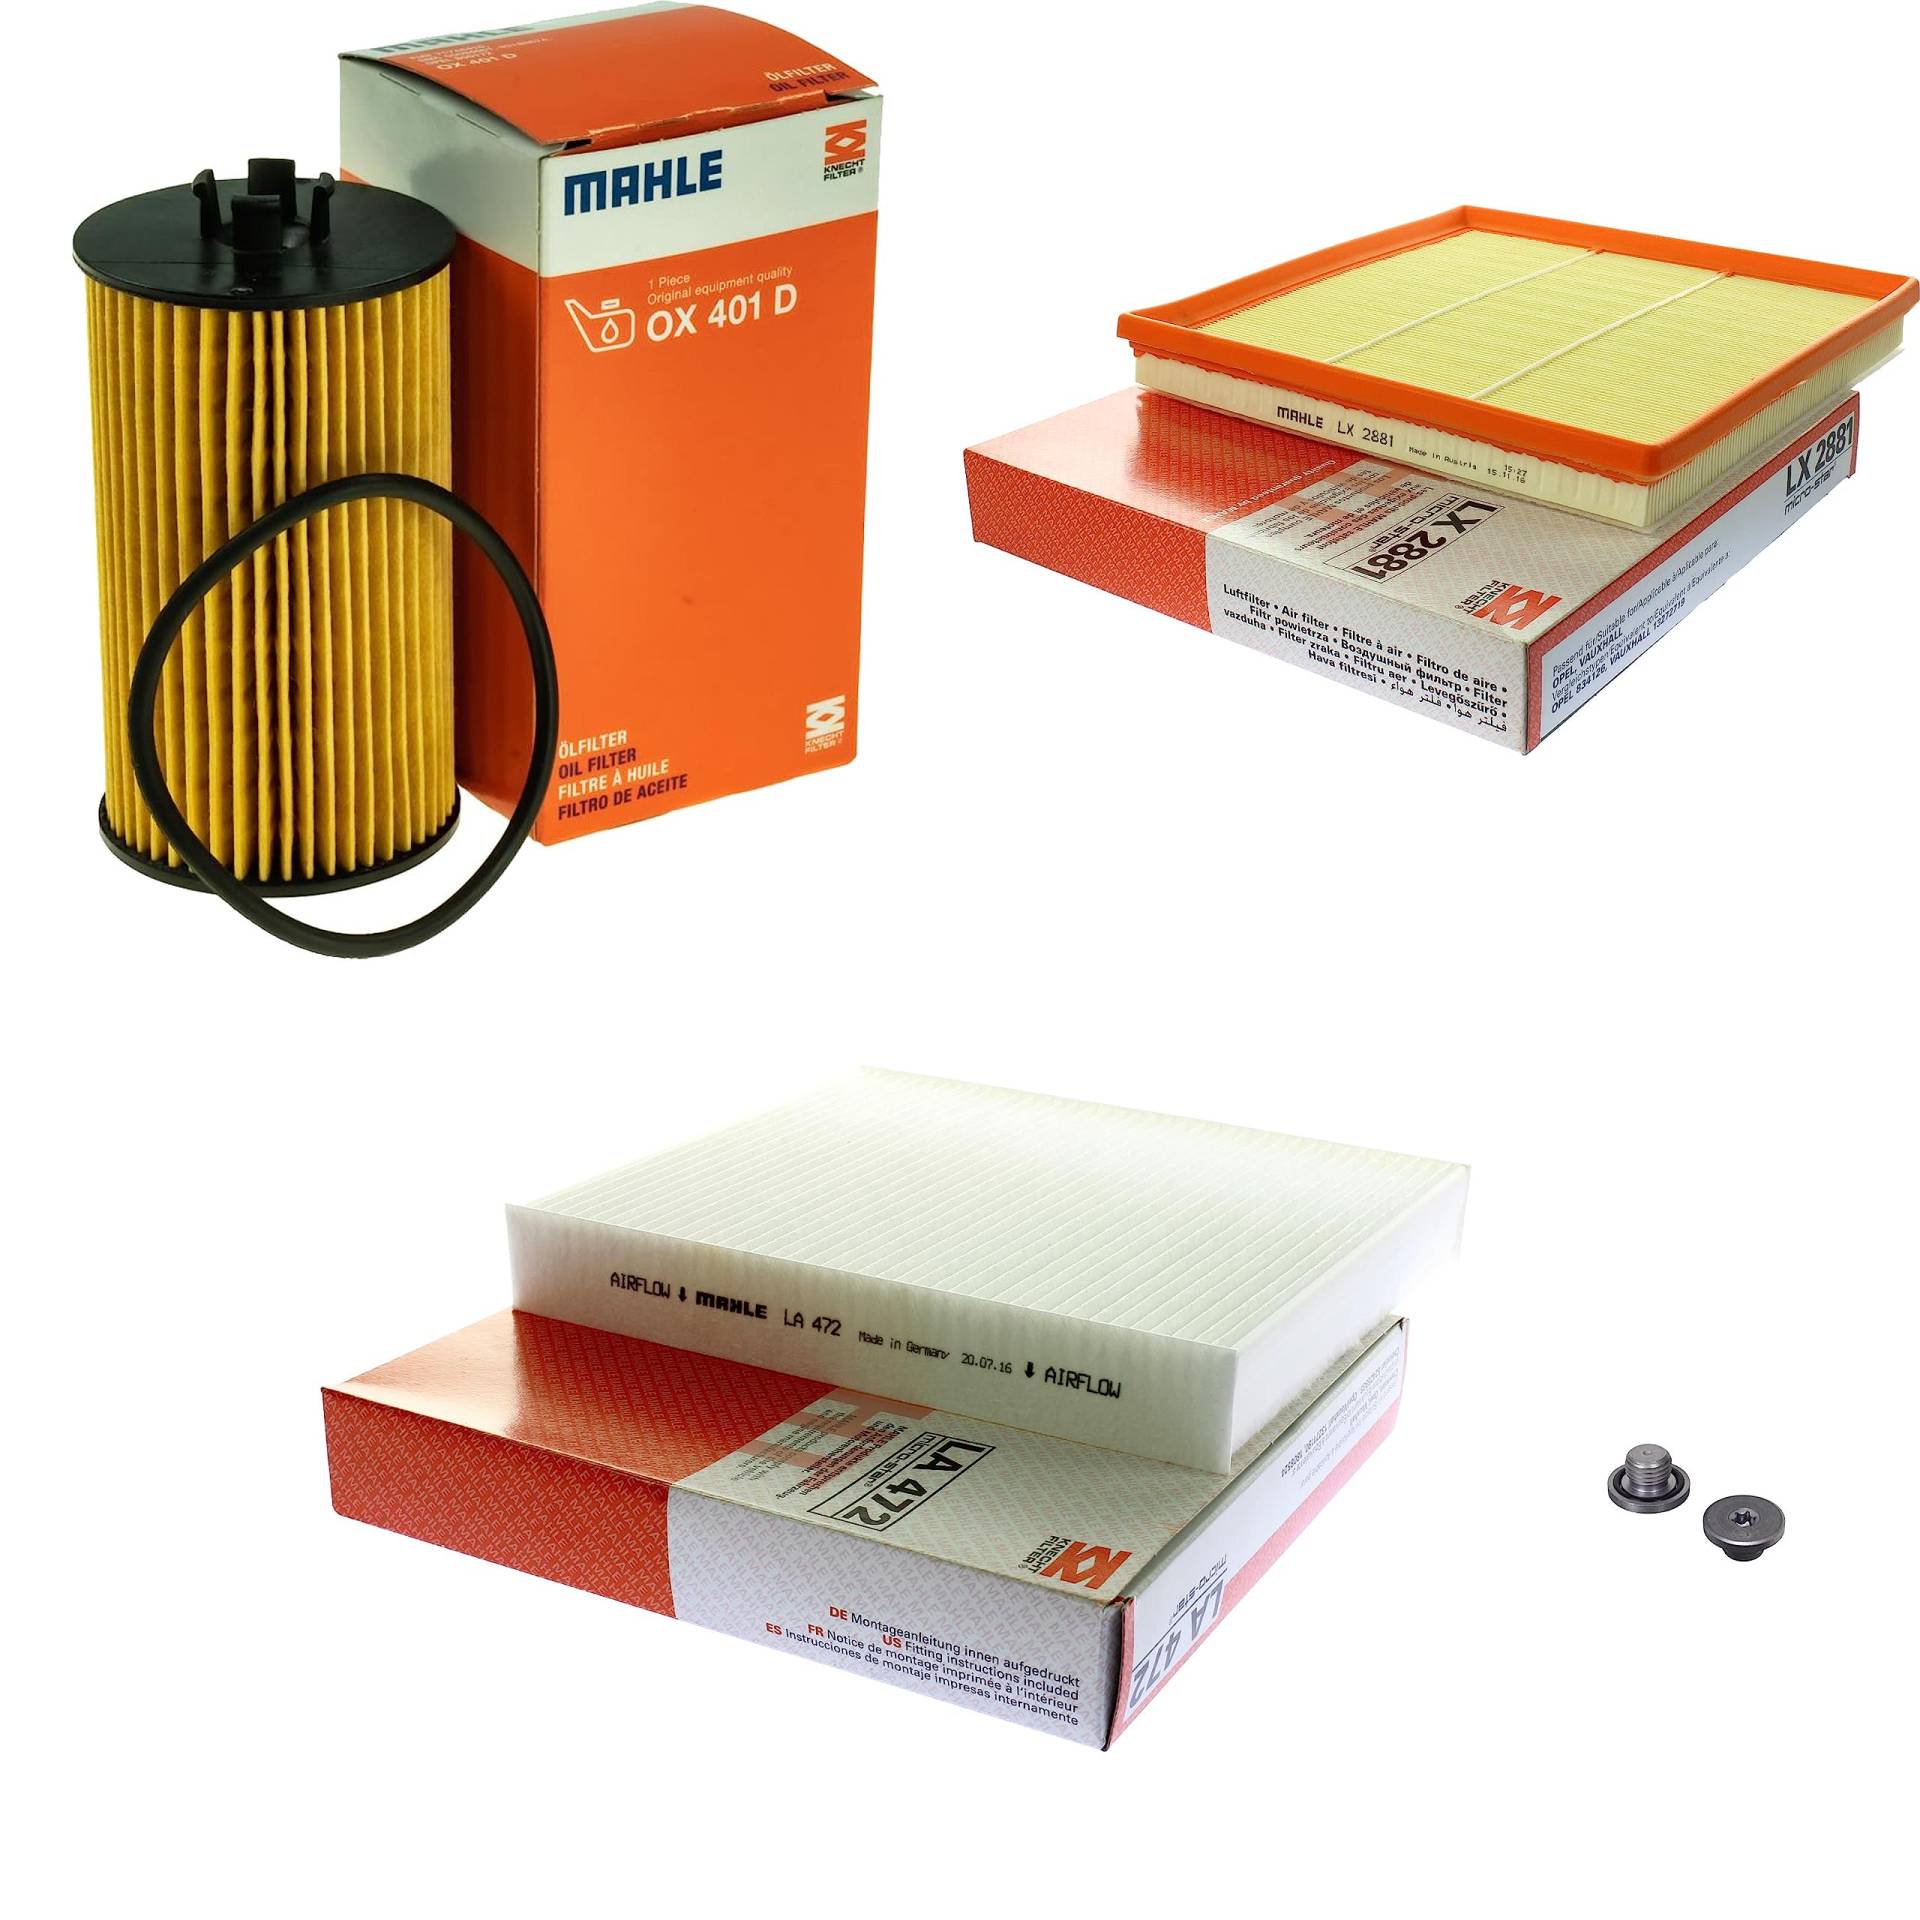 Inspektionspaket Wartungspaket Filterset mit Ölfilter OX 401D, Luftfilter LX 2881, Innenraumfilter LA 472, Verschlussschraube von EISENFELS